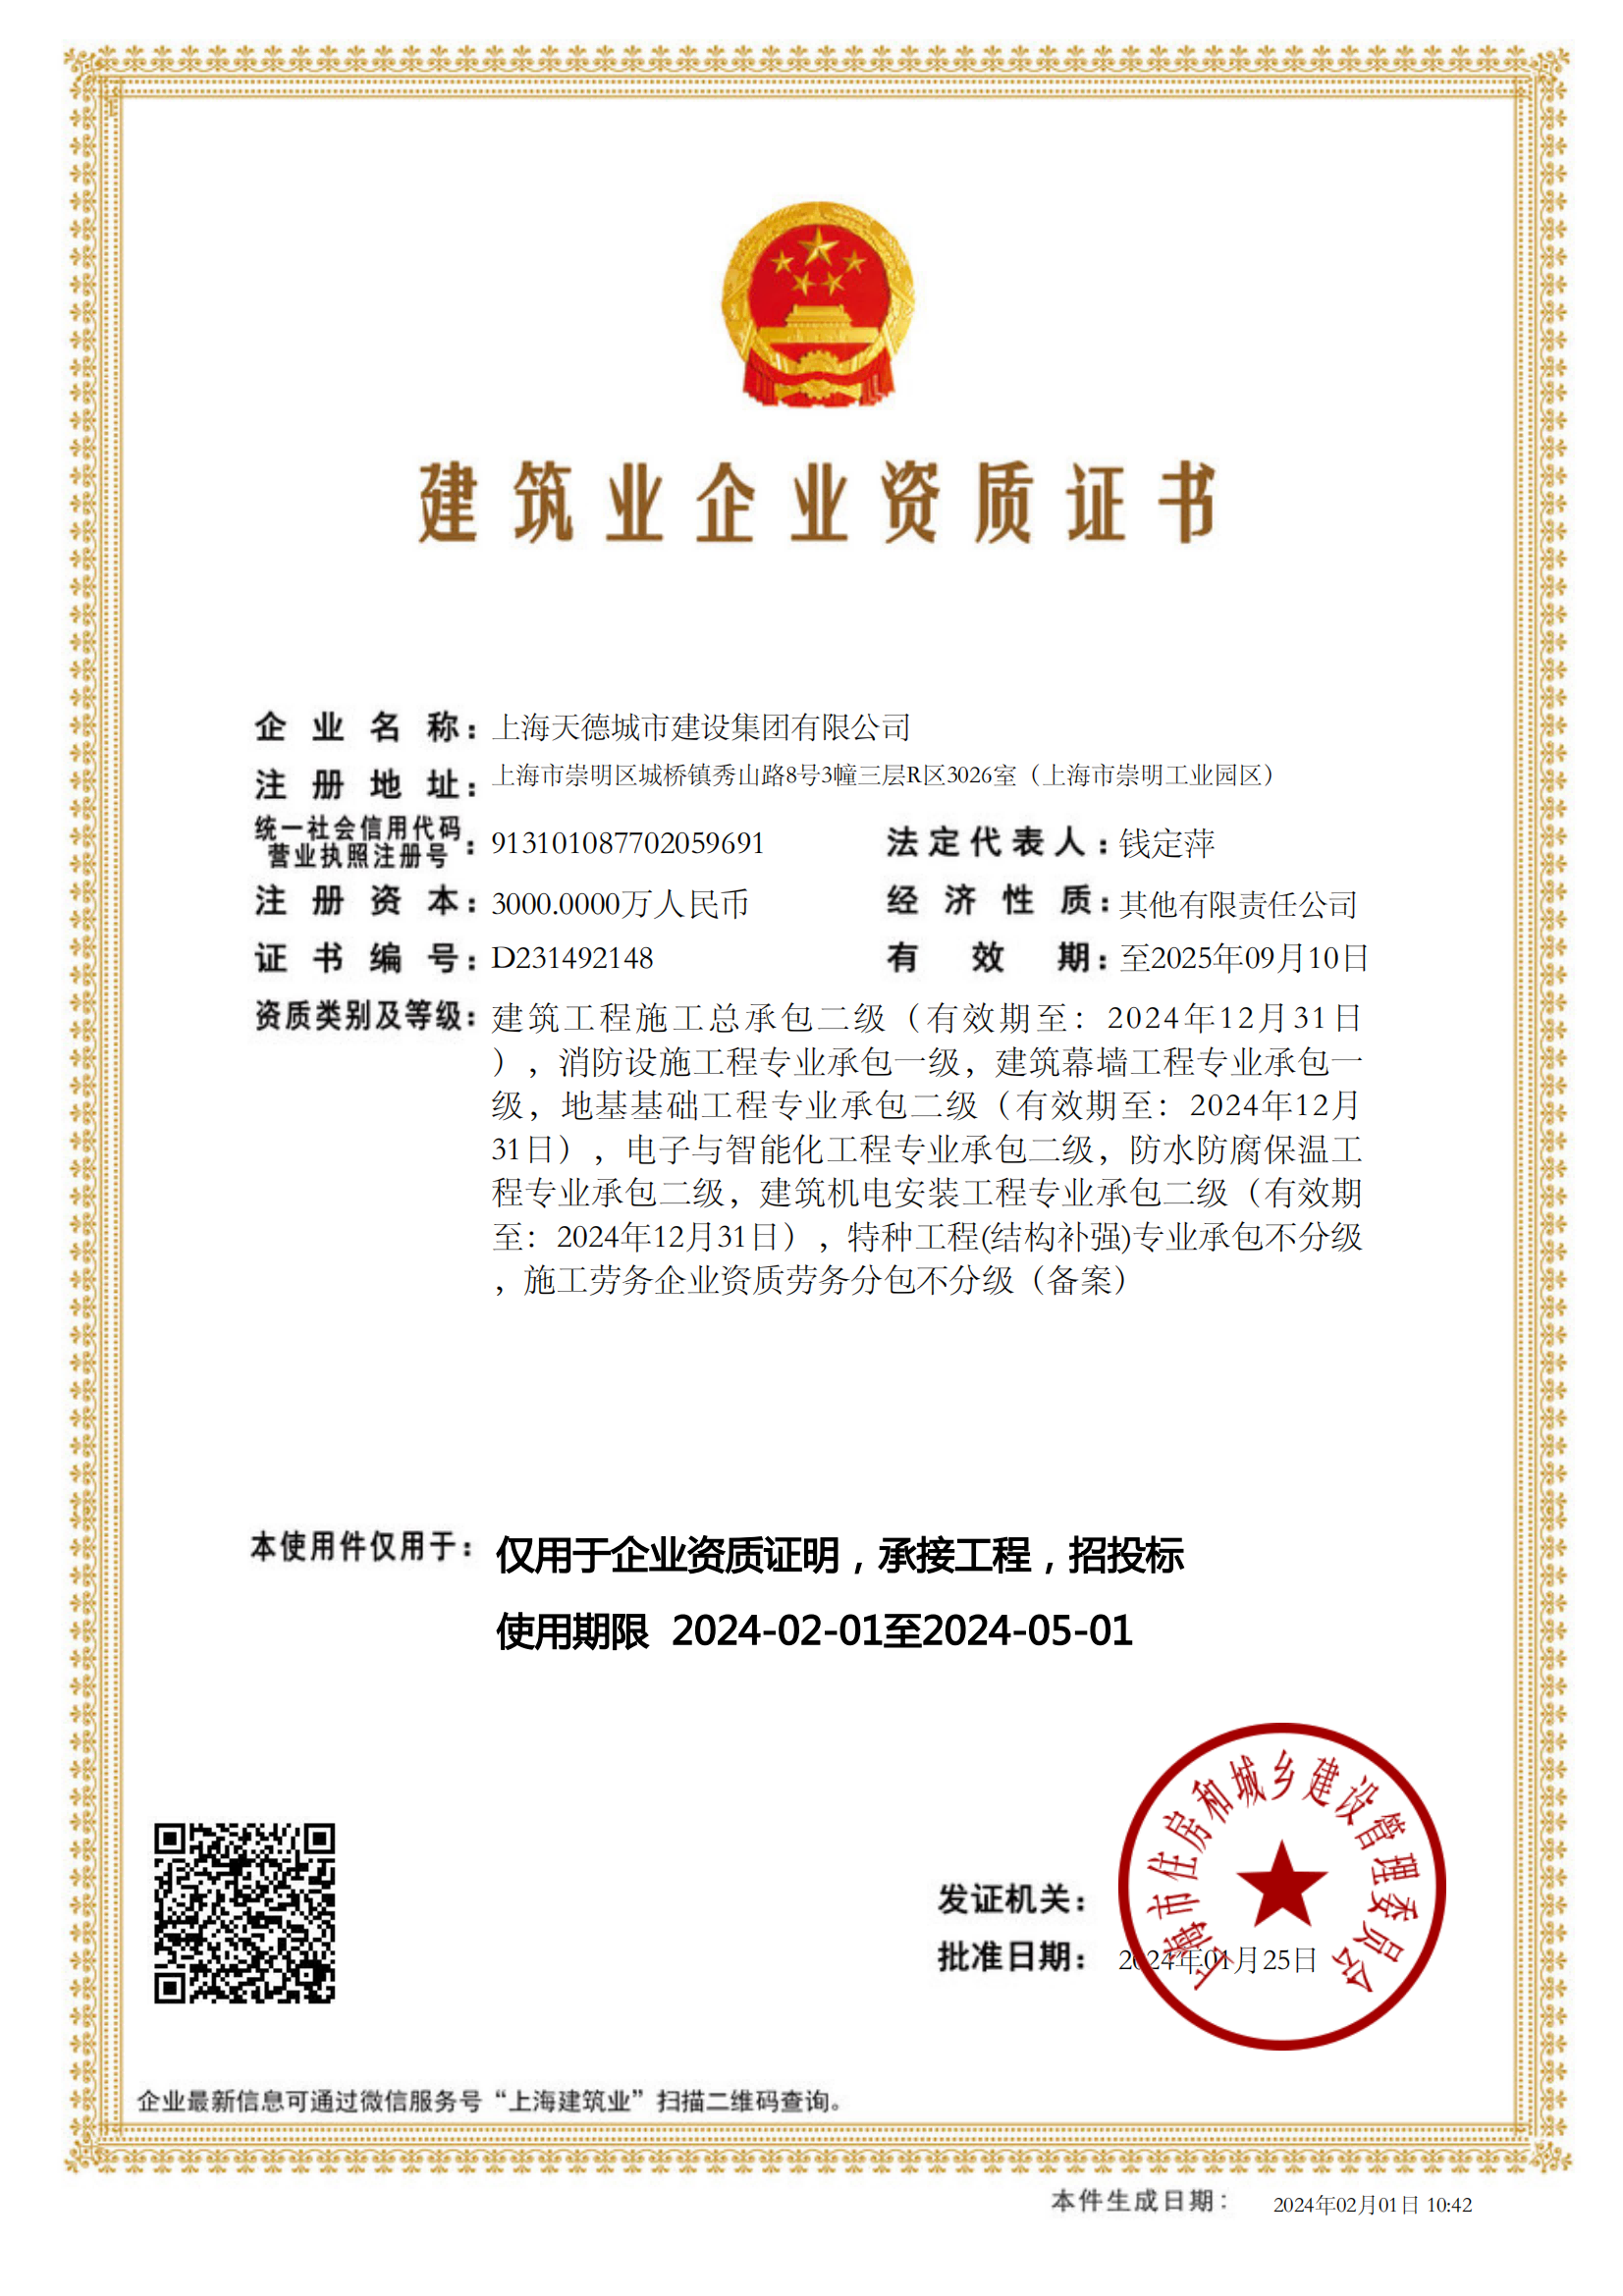 上海天德城市建设集团有限公司建筑业企业资质证书-20240201104254451_00(1).png